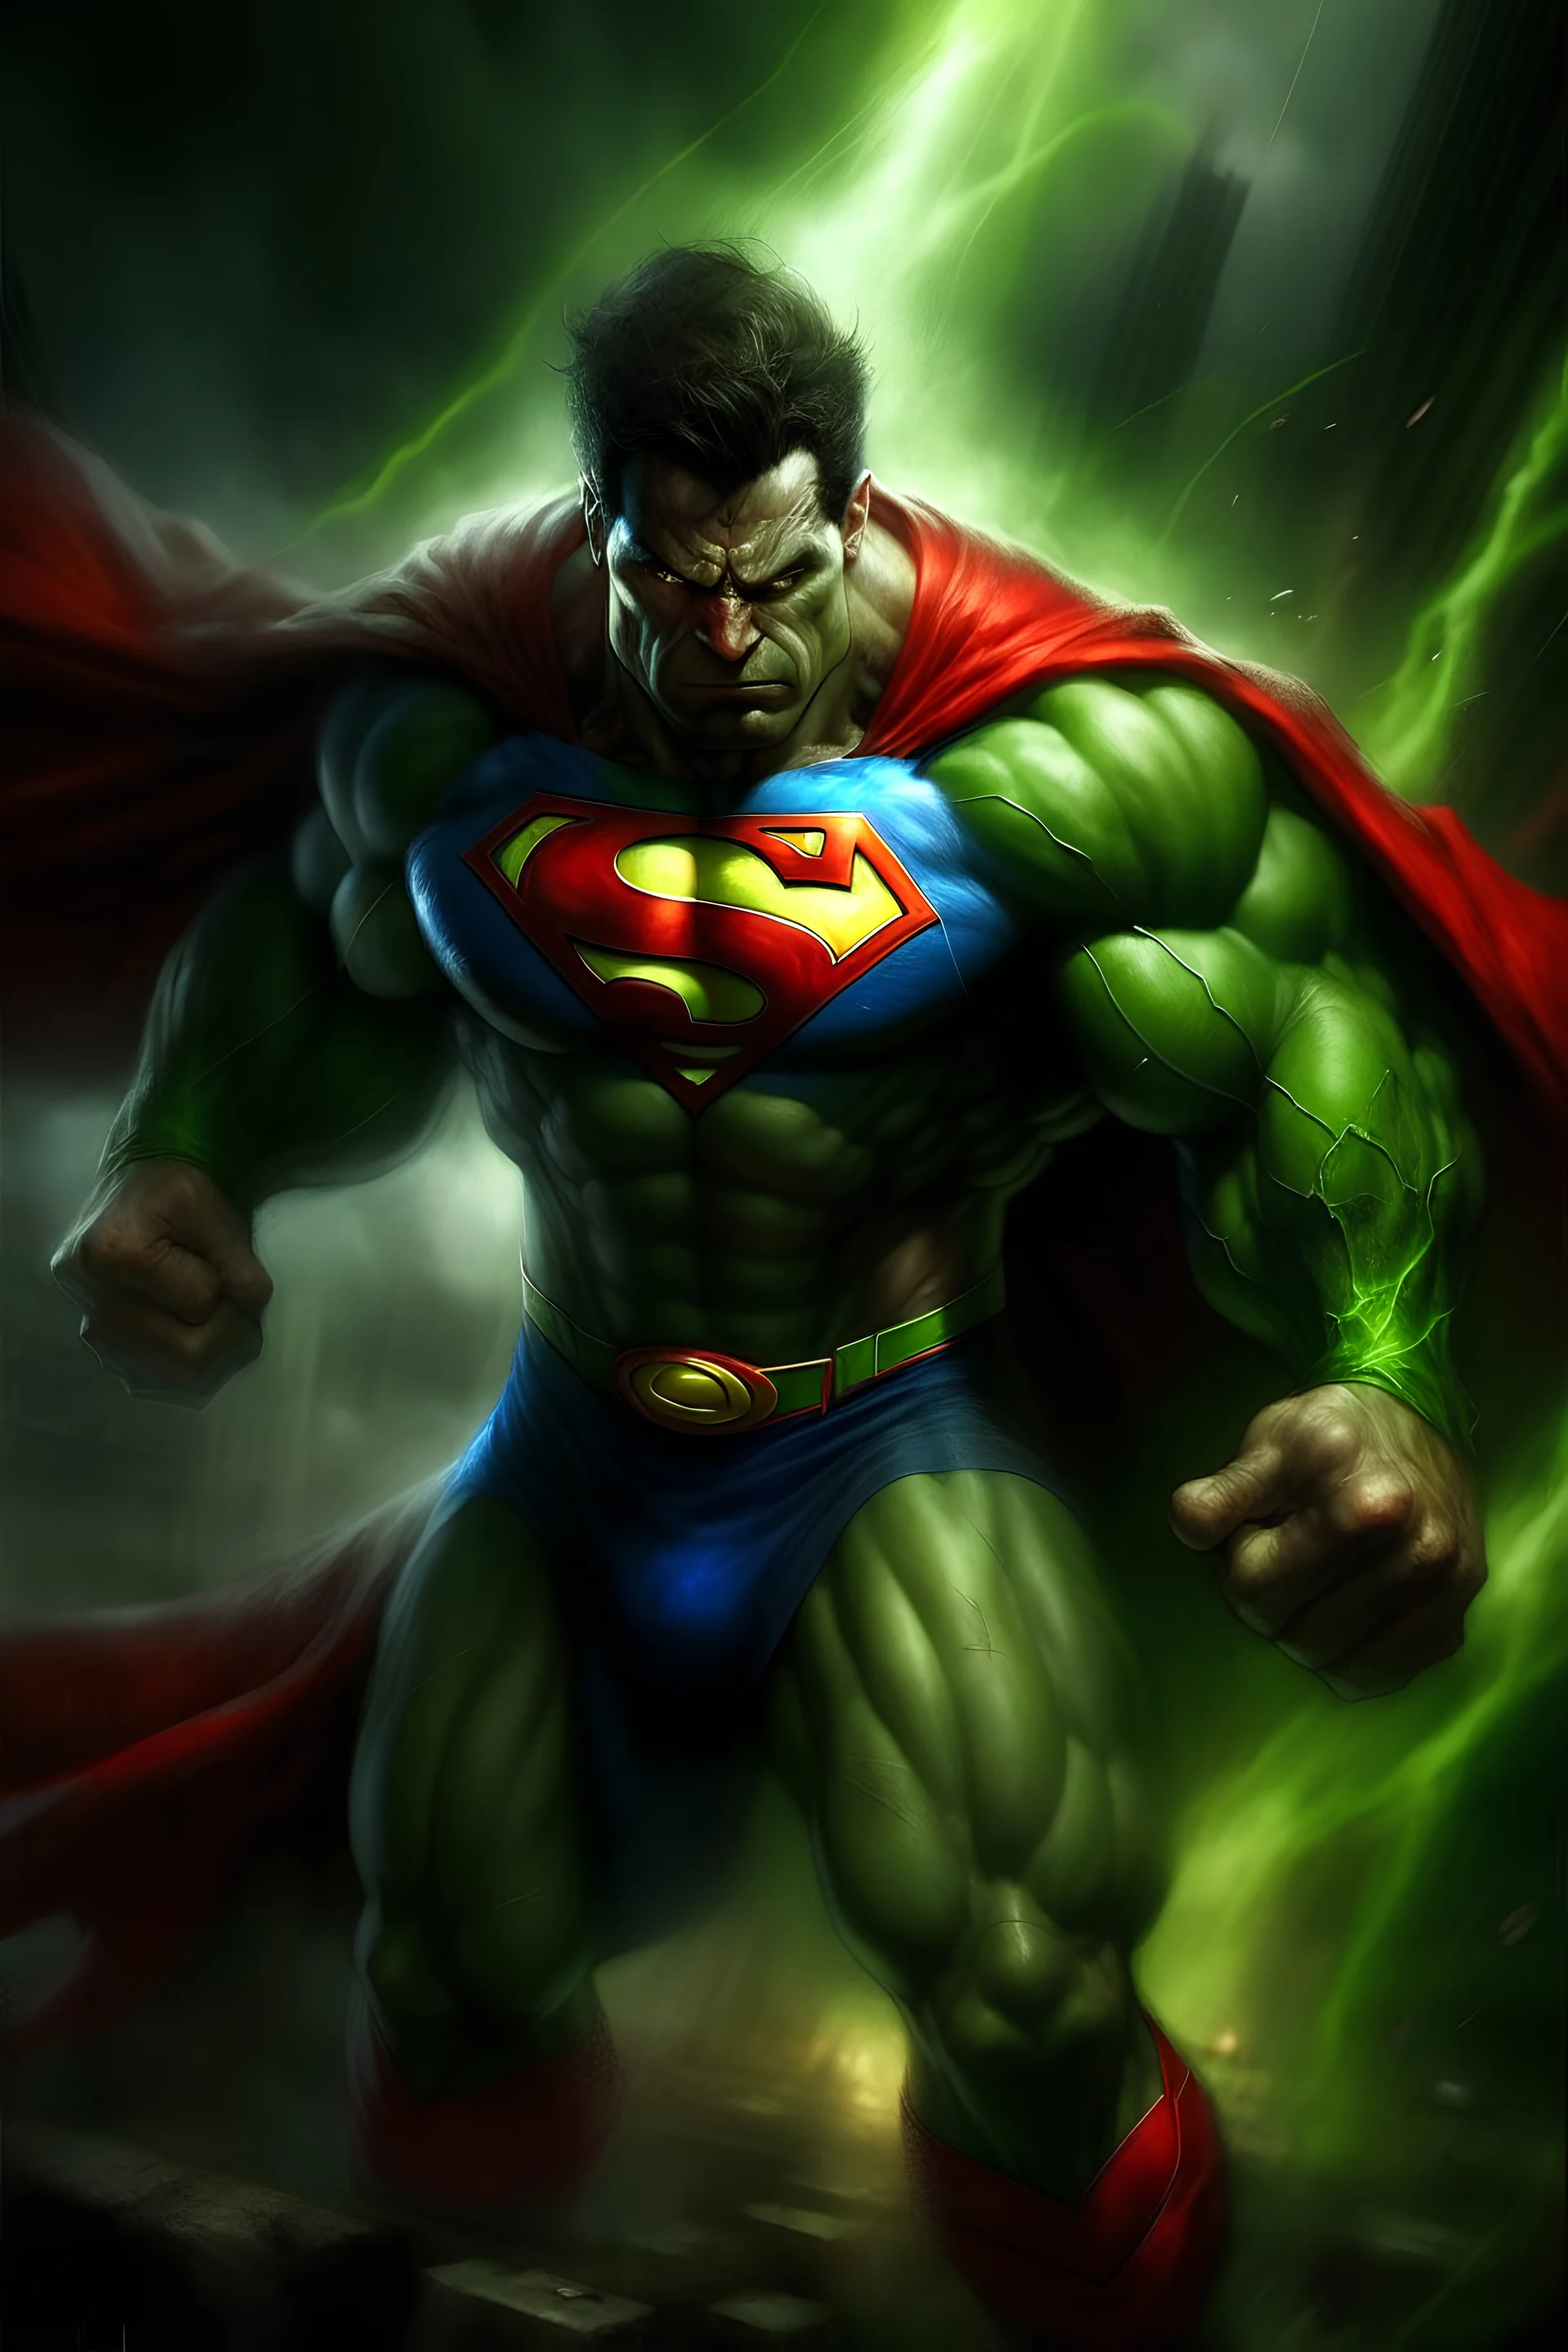 Superman + Hulk Um herói com a força e a resistência do Hulk, mas também com a velocidade e os poderes do Superman. Ele tem a pele verde do Hulk, mas com a capa vermelha e azul do Superman. Seus olhos são vermelhos, como os do Hulk, mas com a visão de calor do Superman. Ele pode voar e disparar raios laser pelos olhos. Ele é um herói poderoso que defende a Terra de qualquer ameaça.